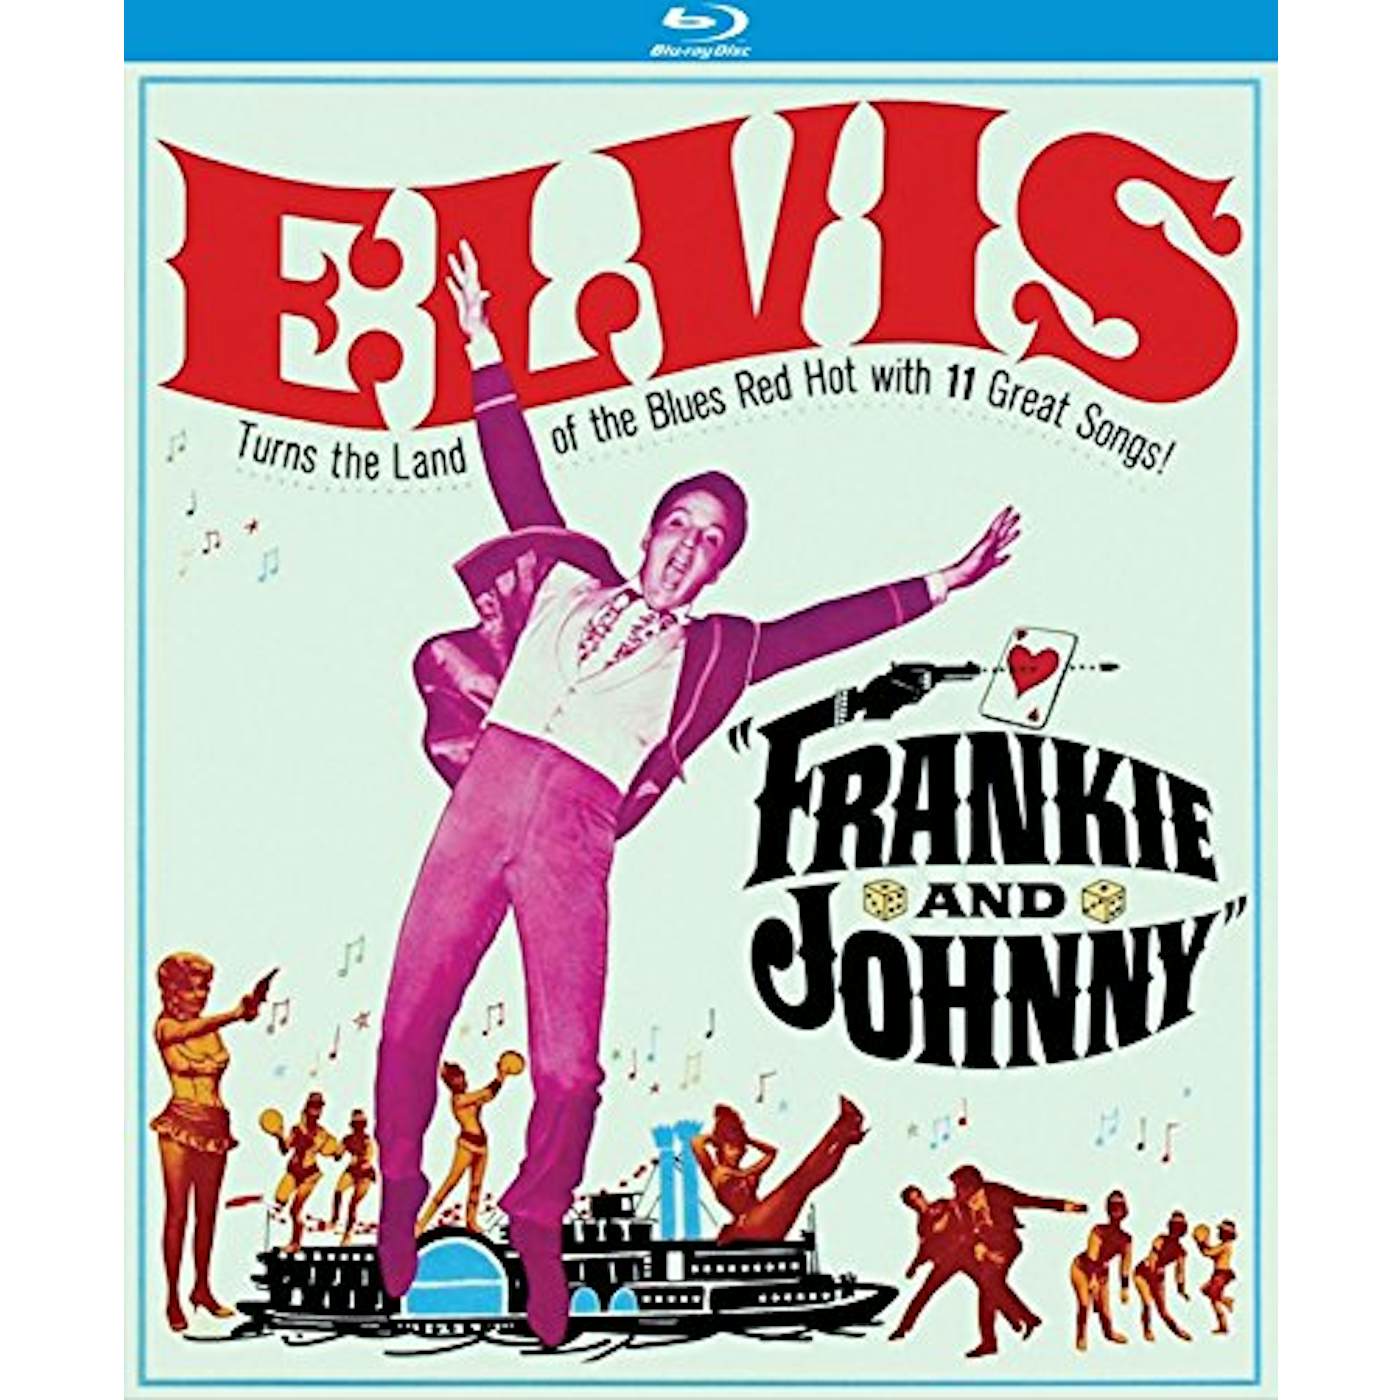 FRANKIE & JOHNNY (1966) Blu-ray